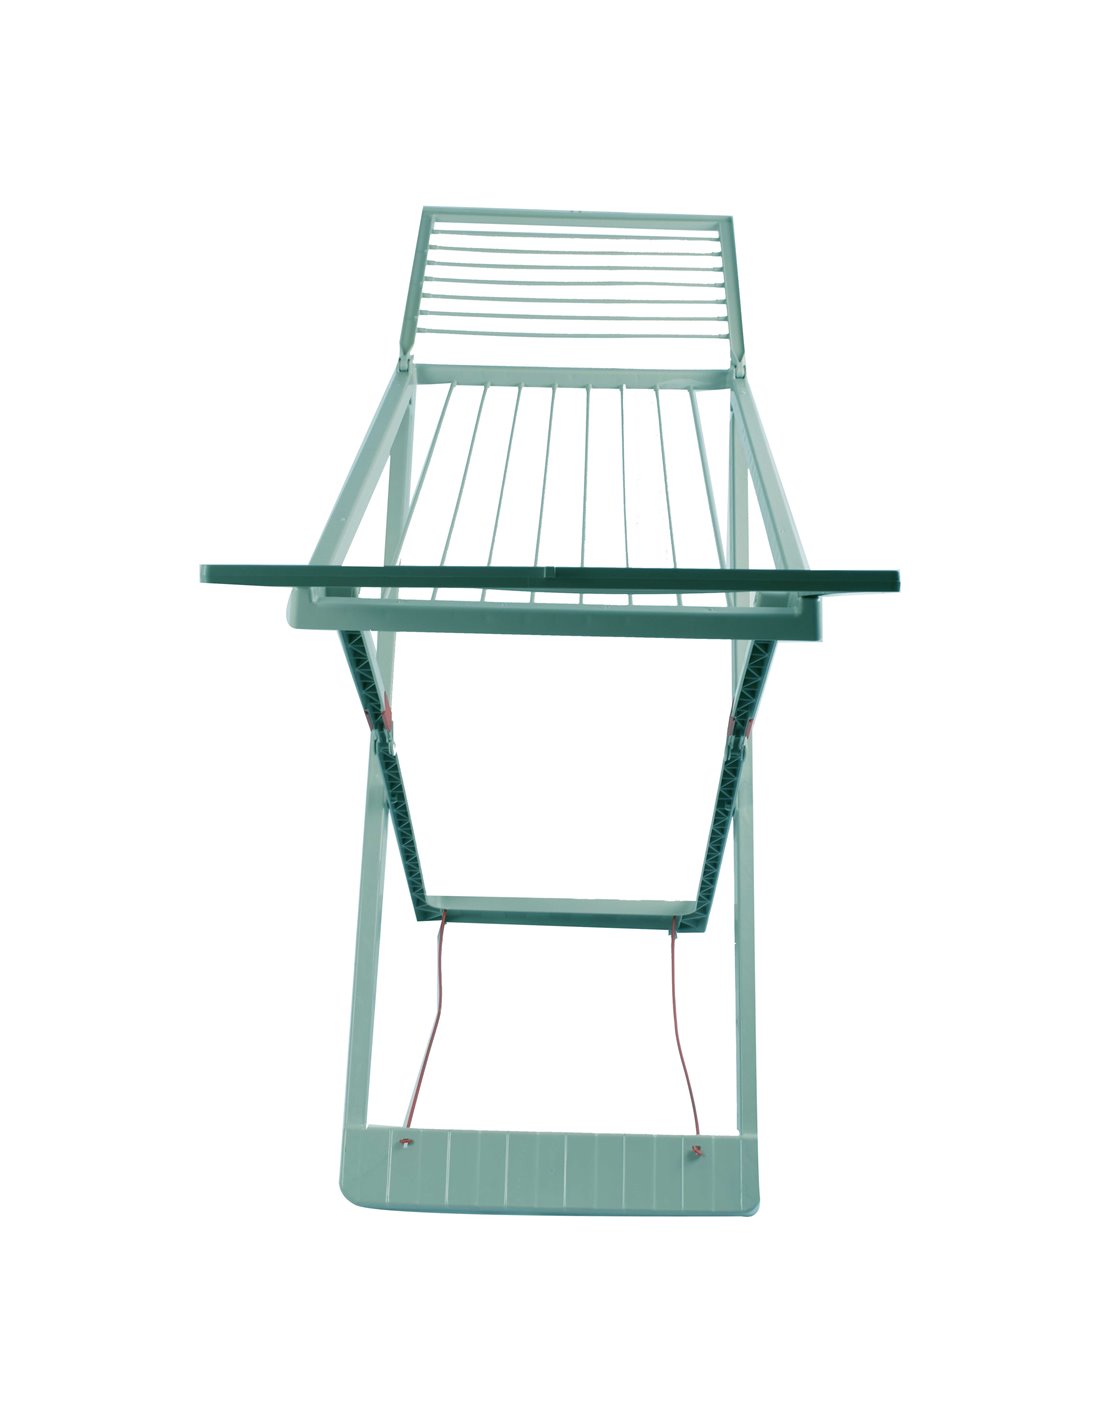 Tendedero plegable de resina– tendal abatible balcón para interior y exteri